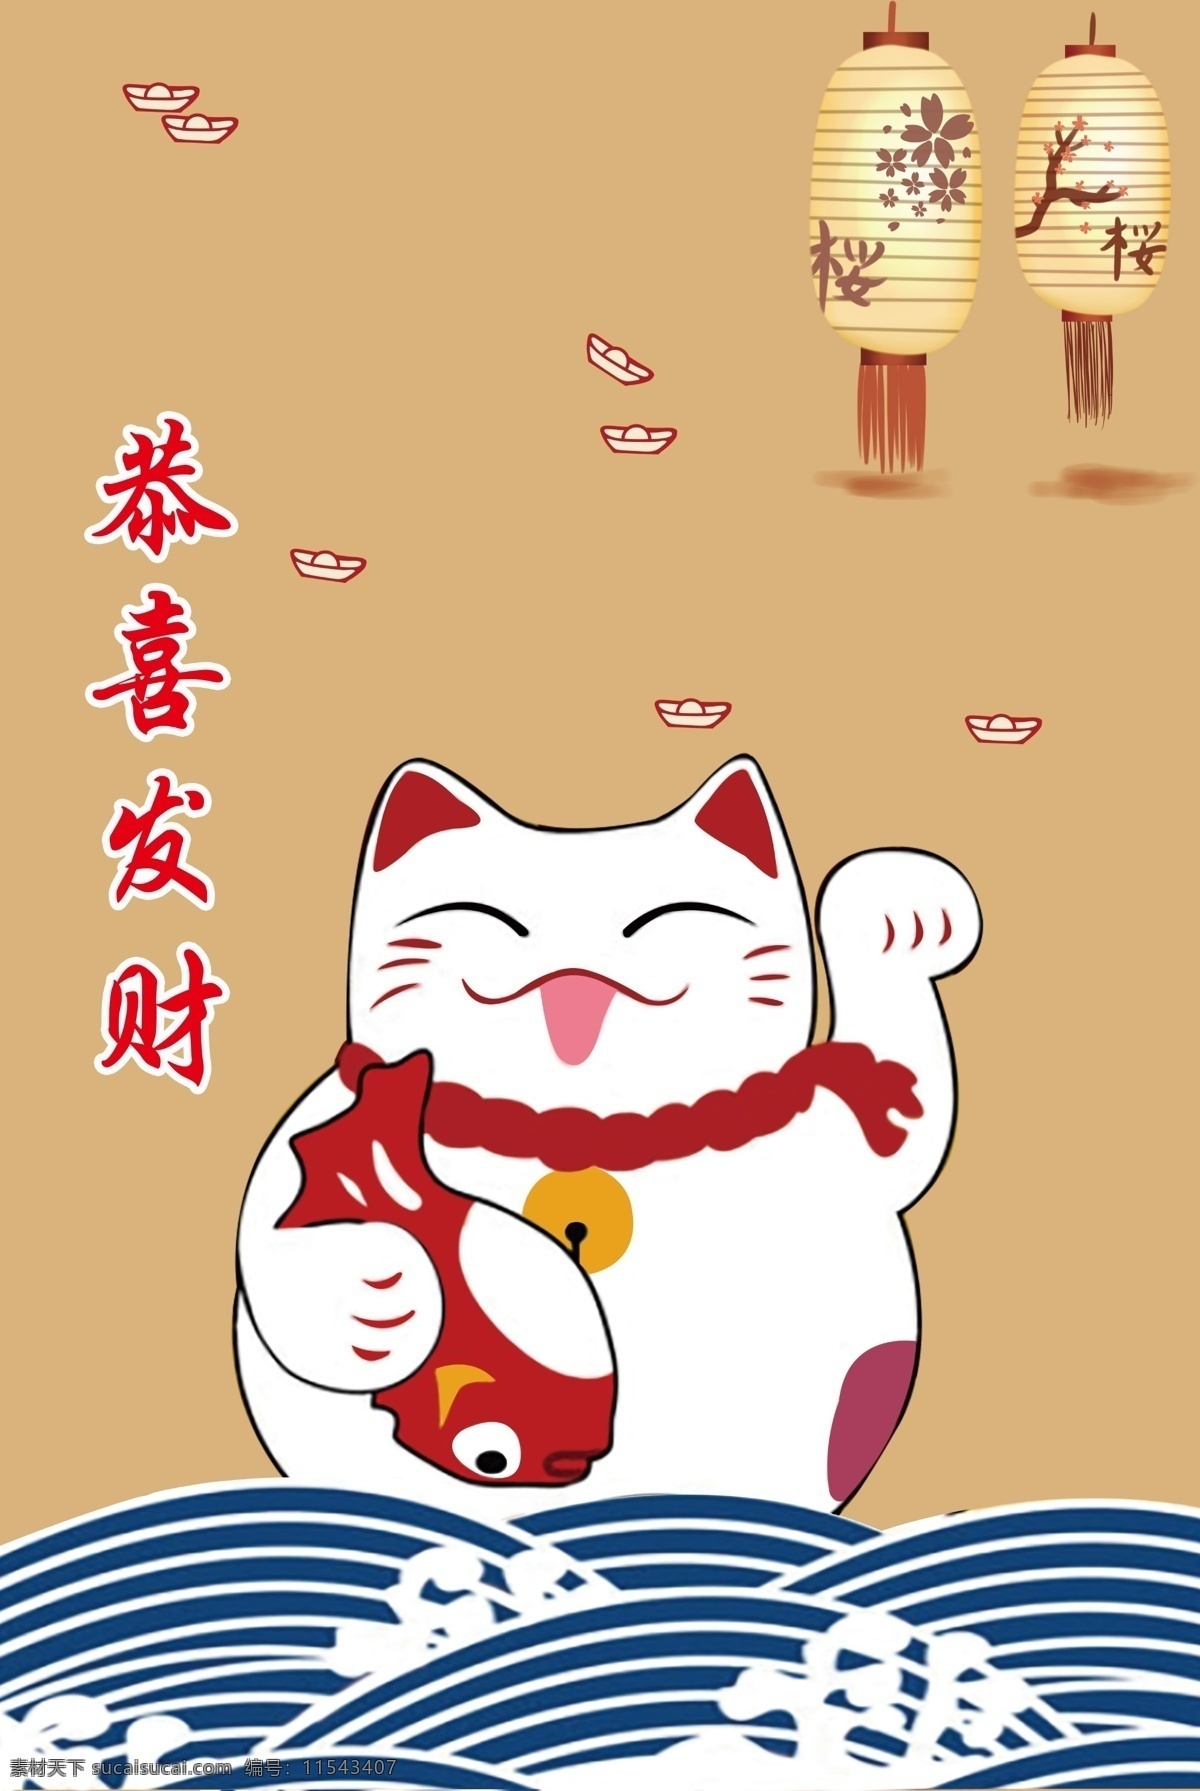 恭喜发财 猫 卡通 招财 日式 海报 画报 广告 日式招财猫